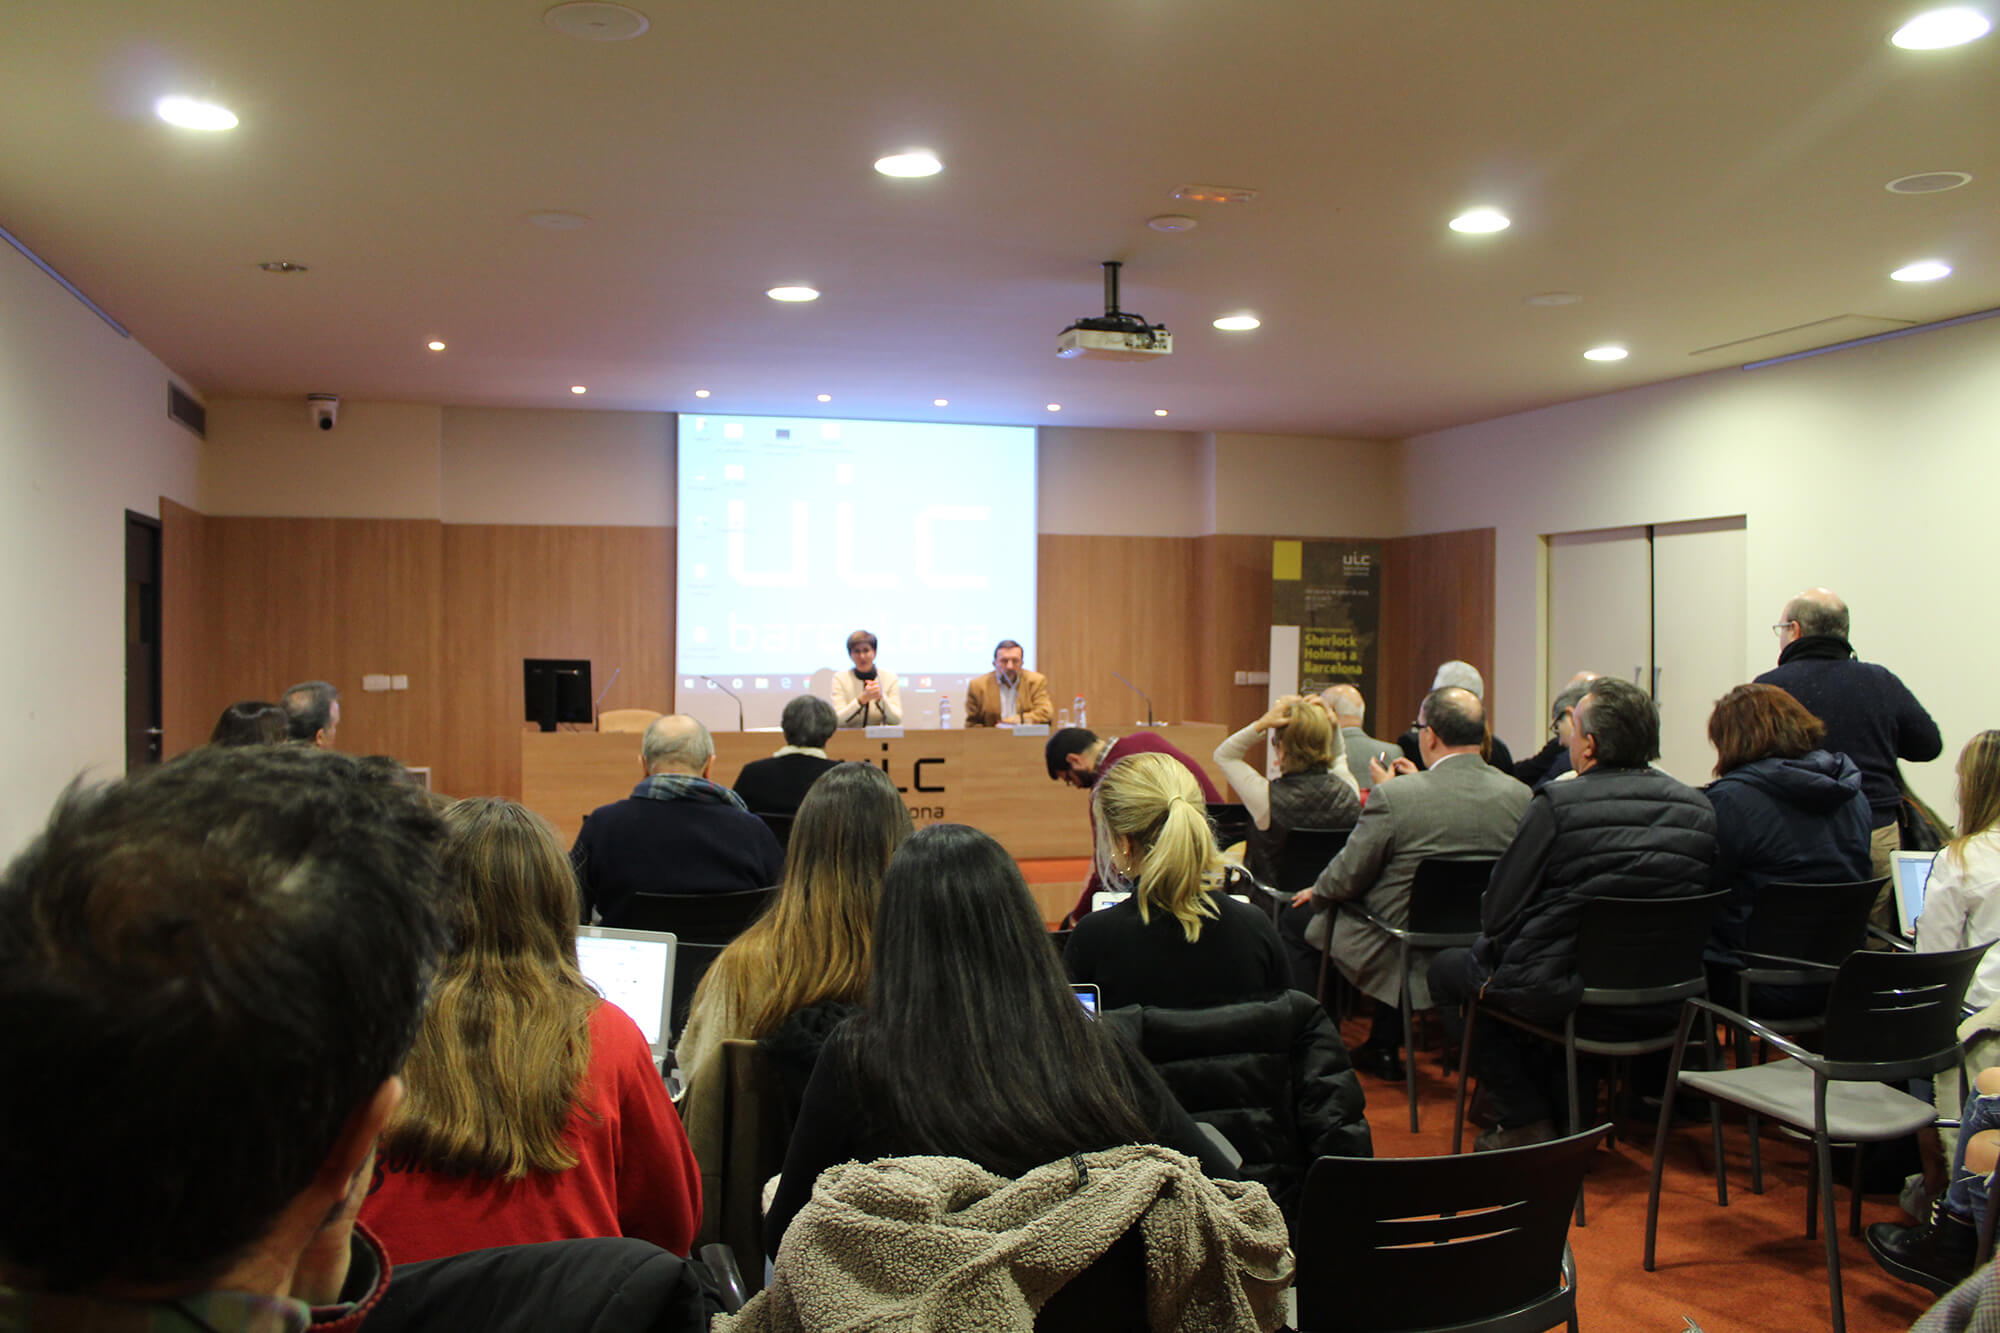 Teresa Vallès, lecturer at UIC Barcelona. Talk: “Carlos Pujol i la novel·la policíaca: la literatura com a diversió intel·ligent”. UIC Barcelona, 30 January, 2019.